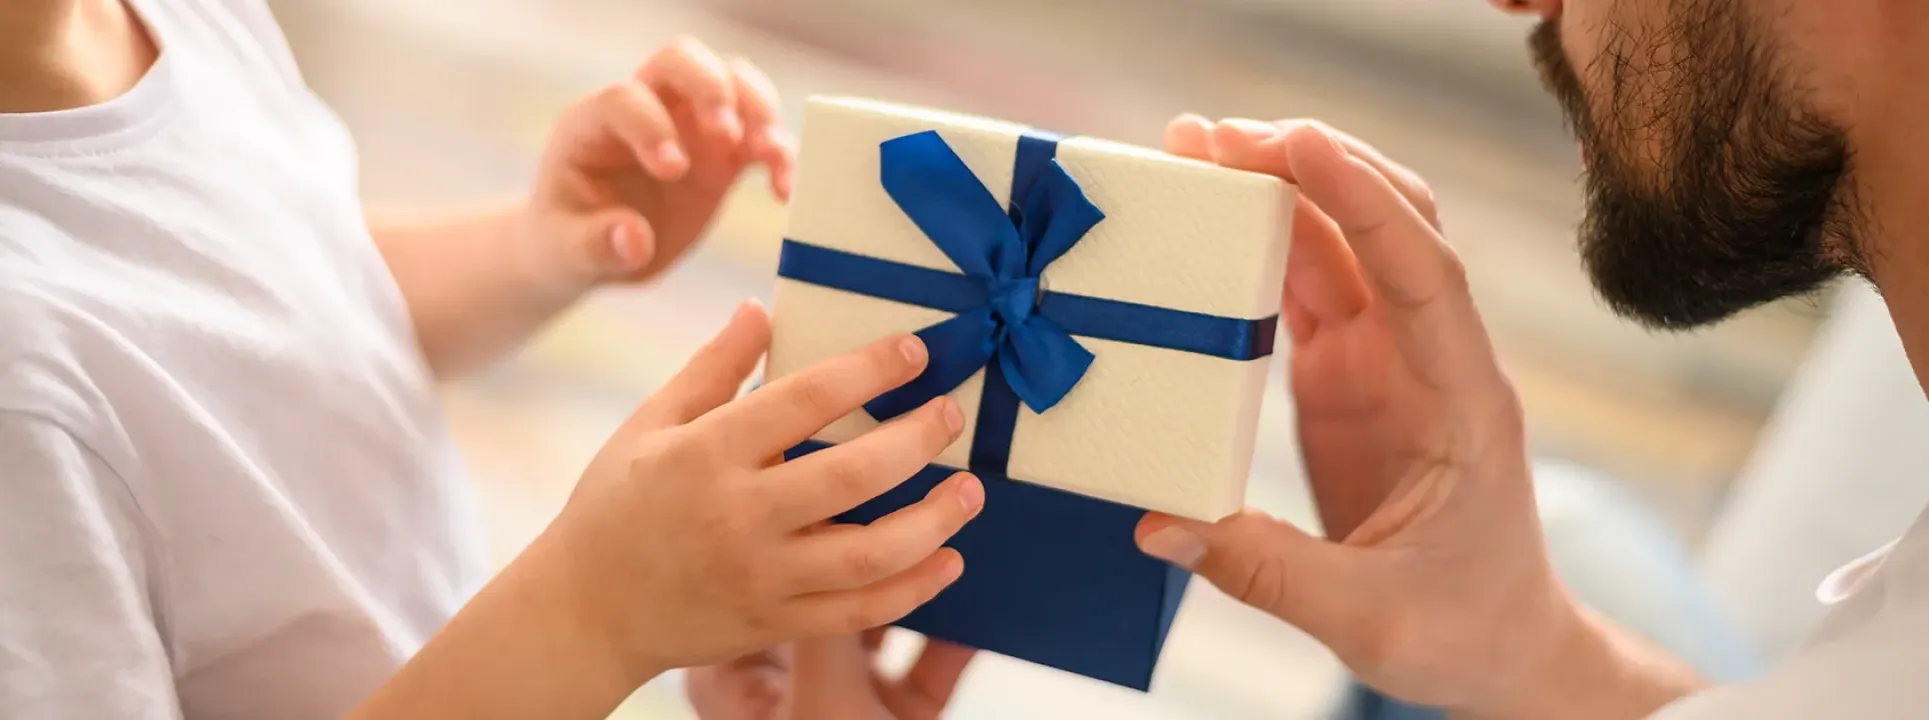 Cadeaux fête de père – 5 bonnes suggestions